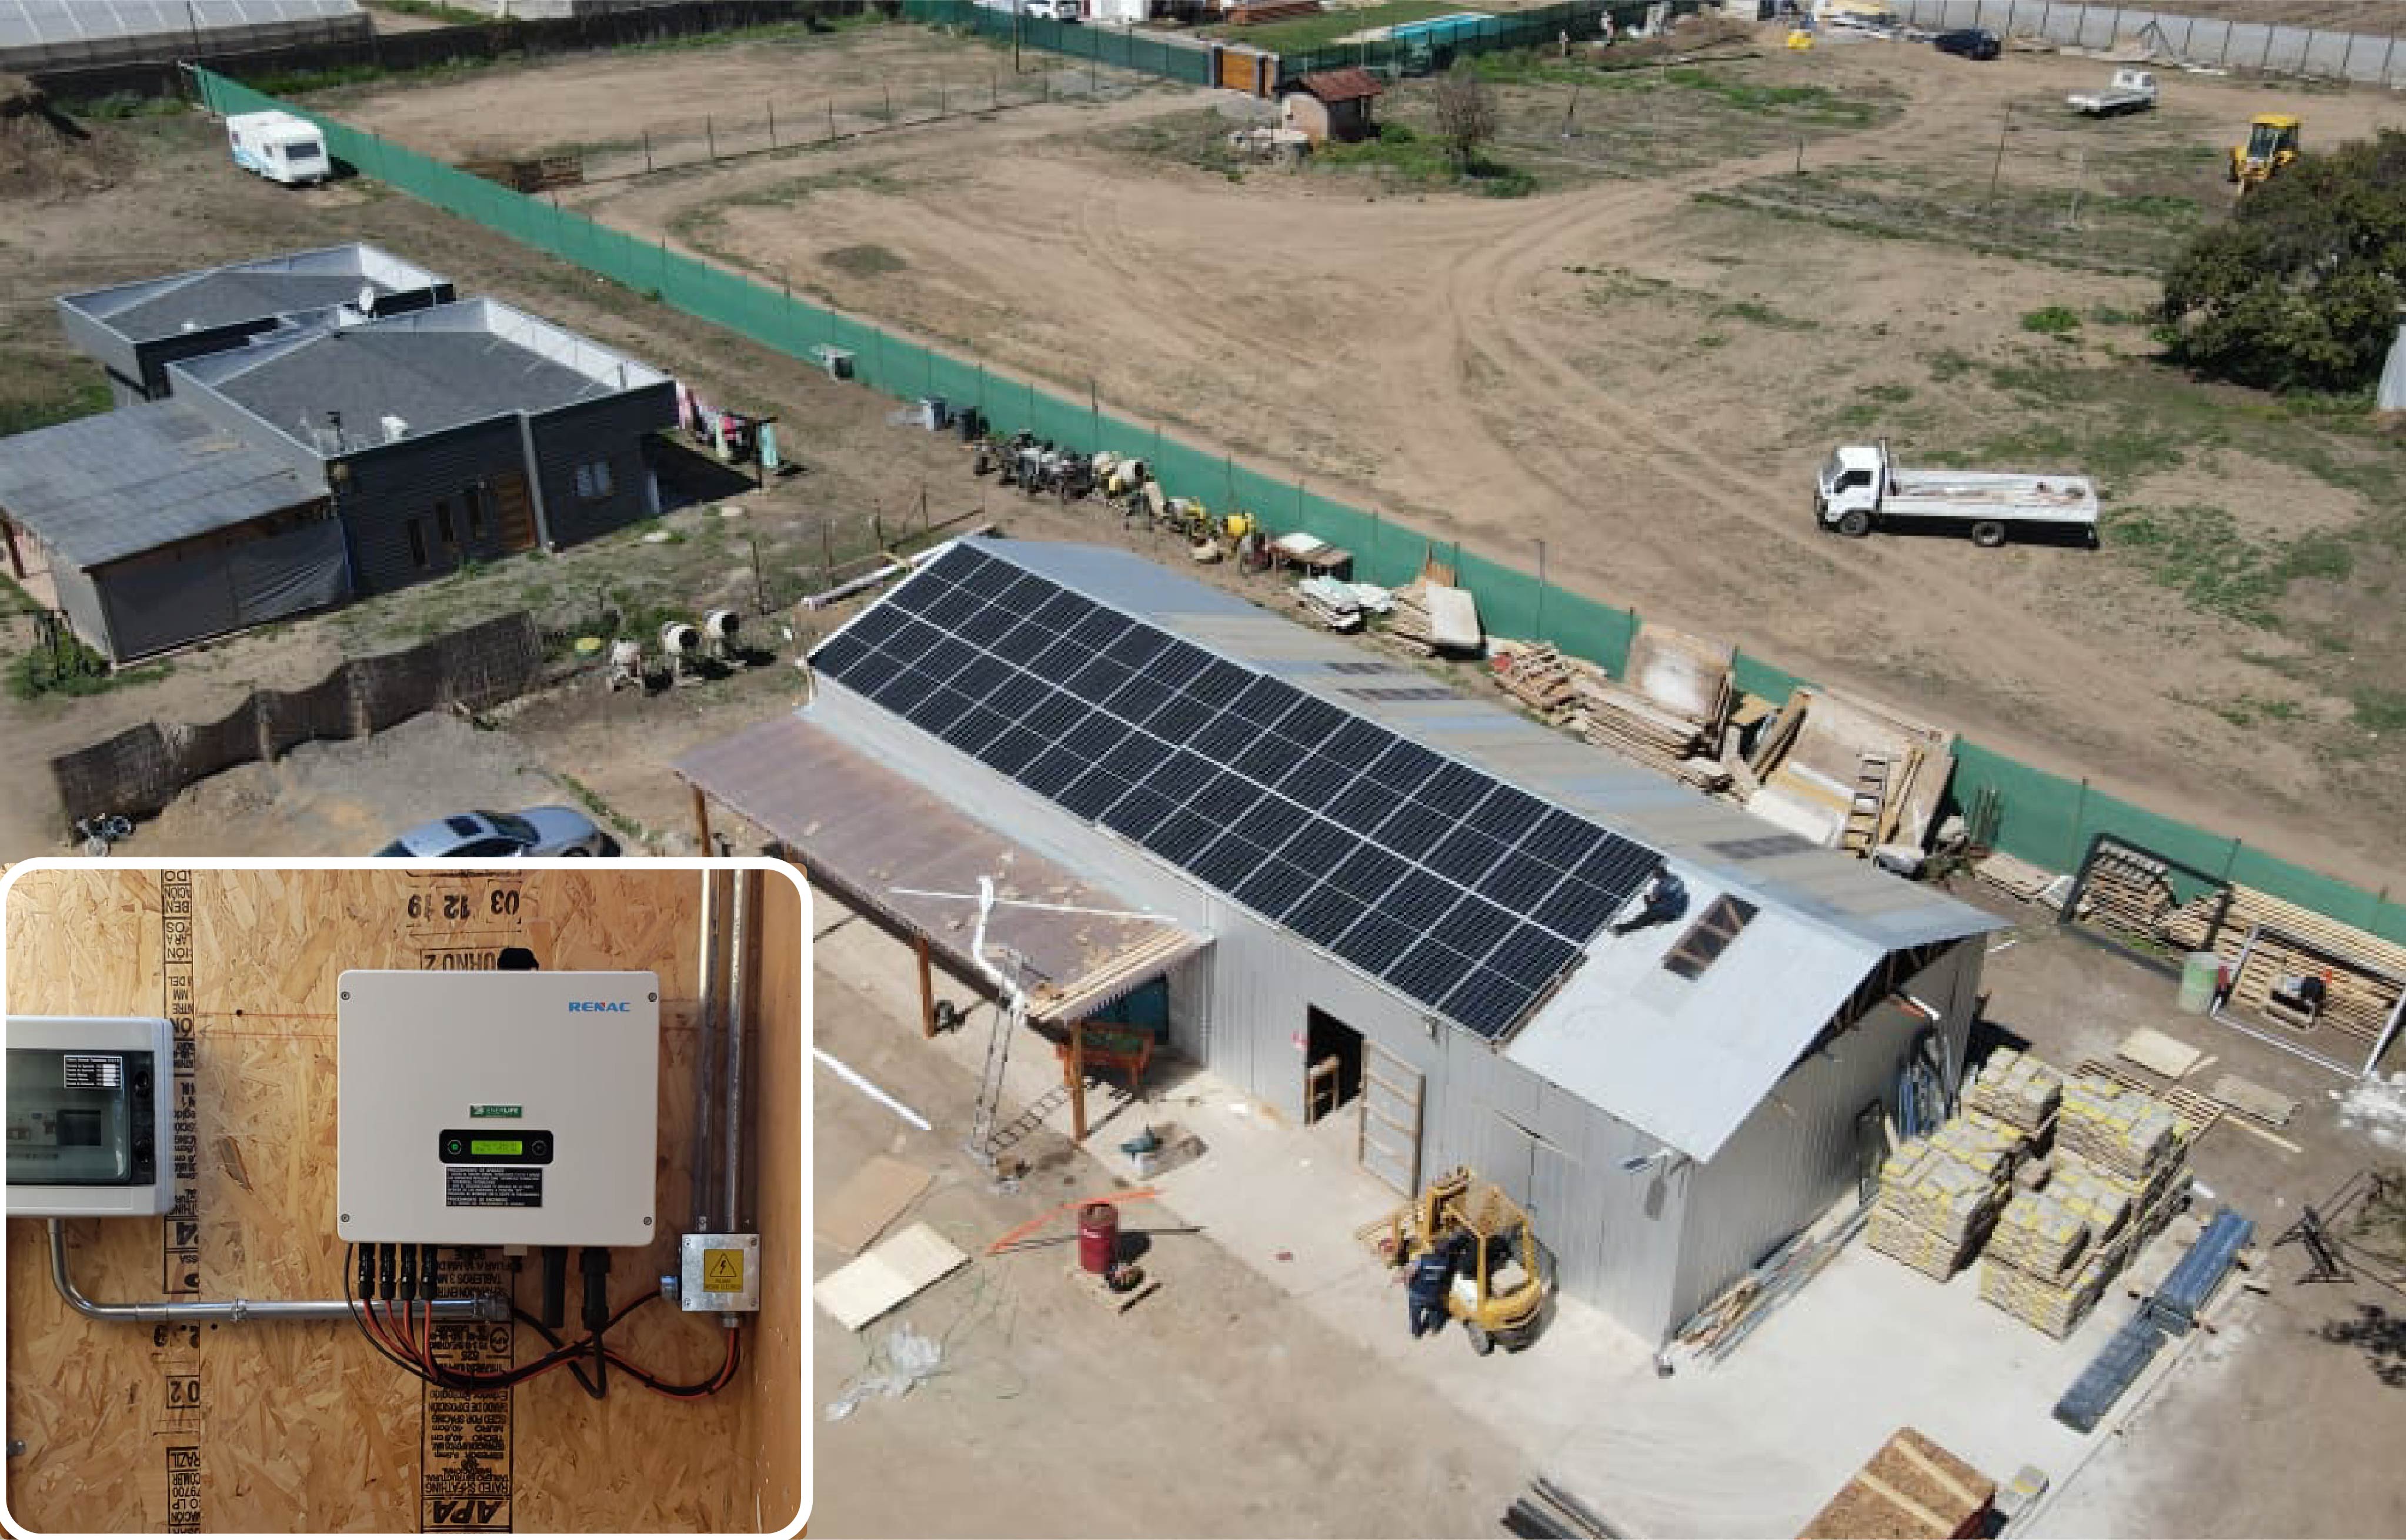 Progetto on-grid sul tetto di un magazzino in Cile da 10 kW